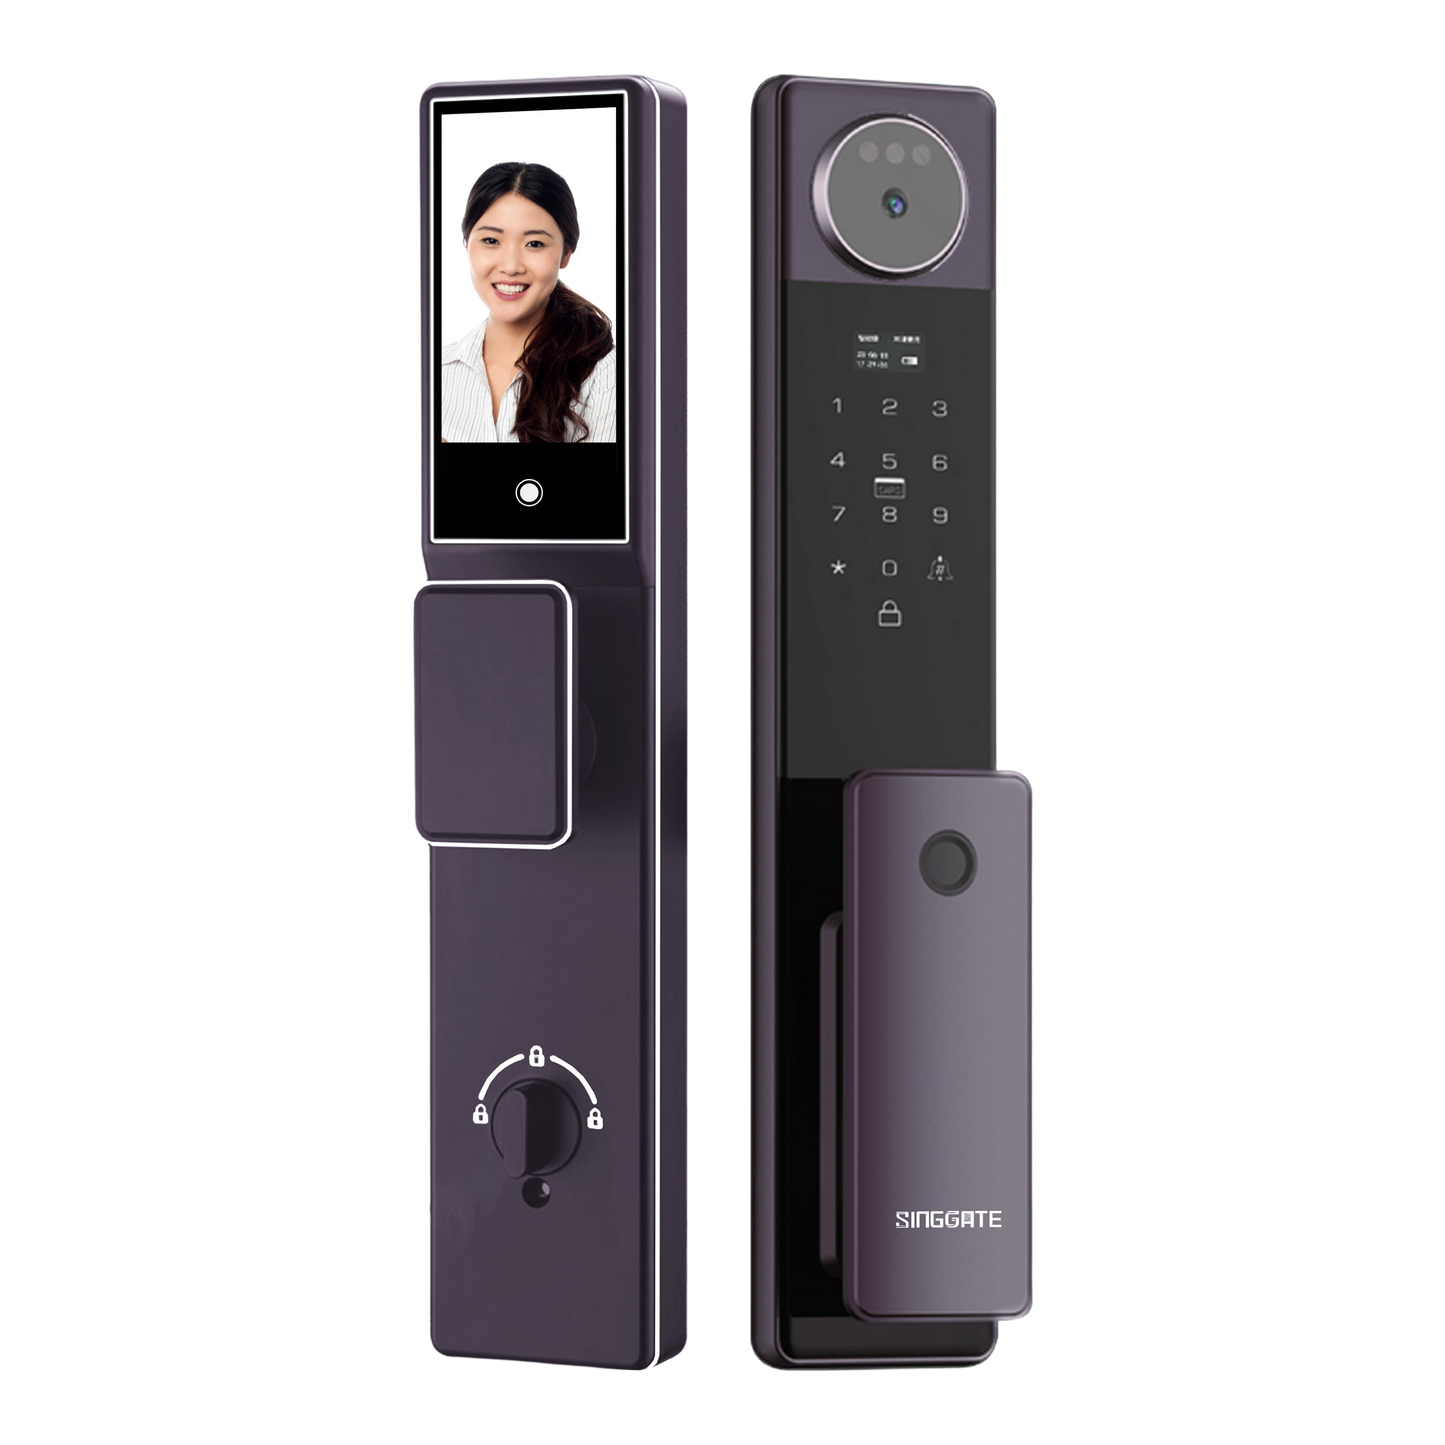 FR052 3D Face & Palm Vein Recognition + Video Call Door Viewer Digital Door Lock